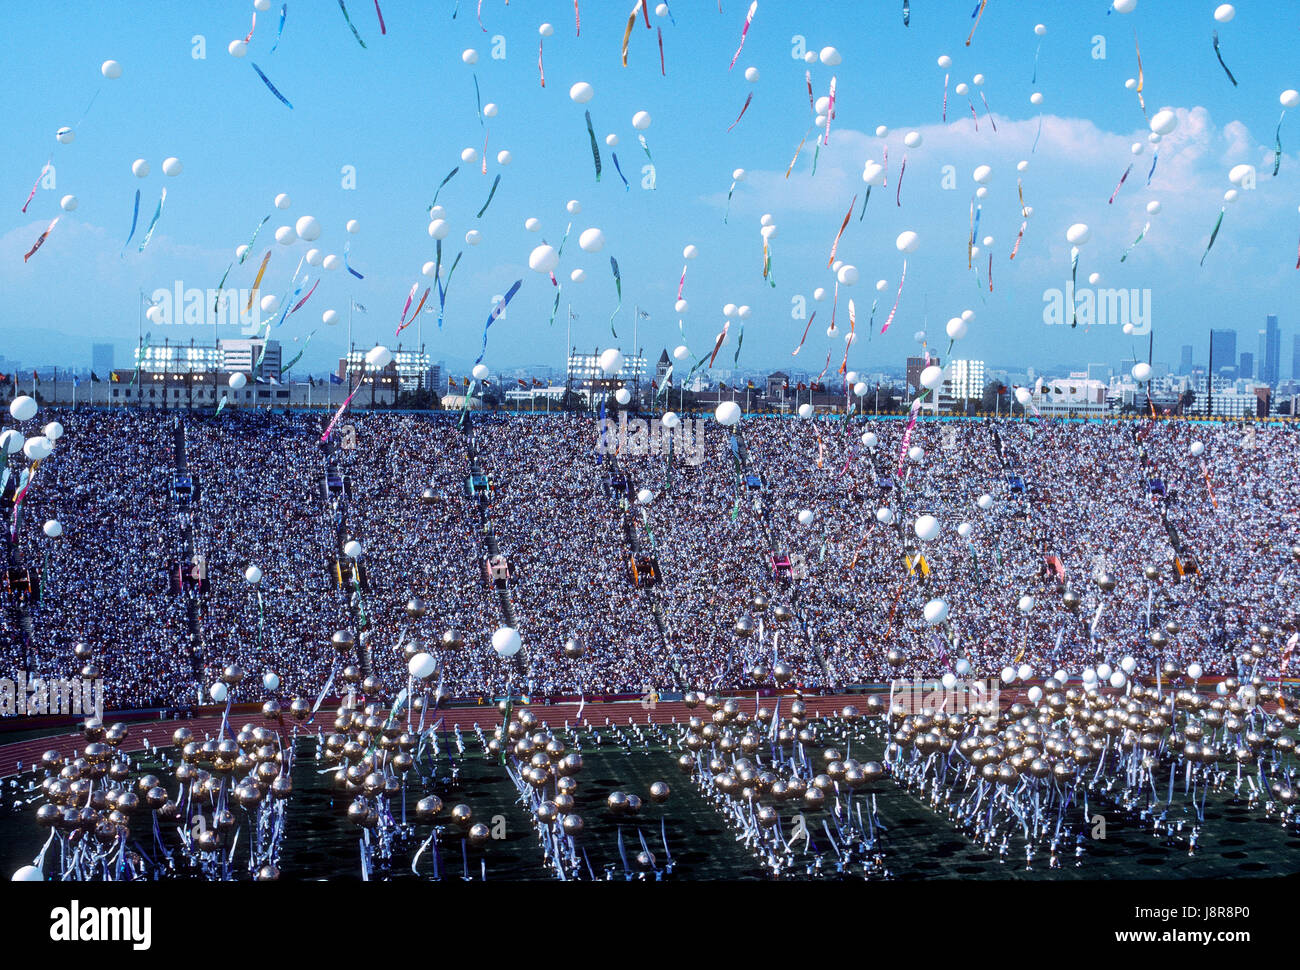 La cérémonie d'ouverture des Jeux Olympiques d'été de 1984, Los Angeles, CA Banque D'Images